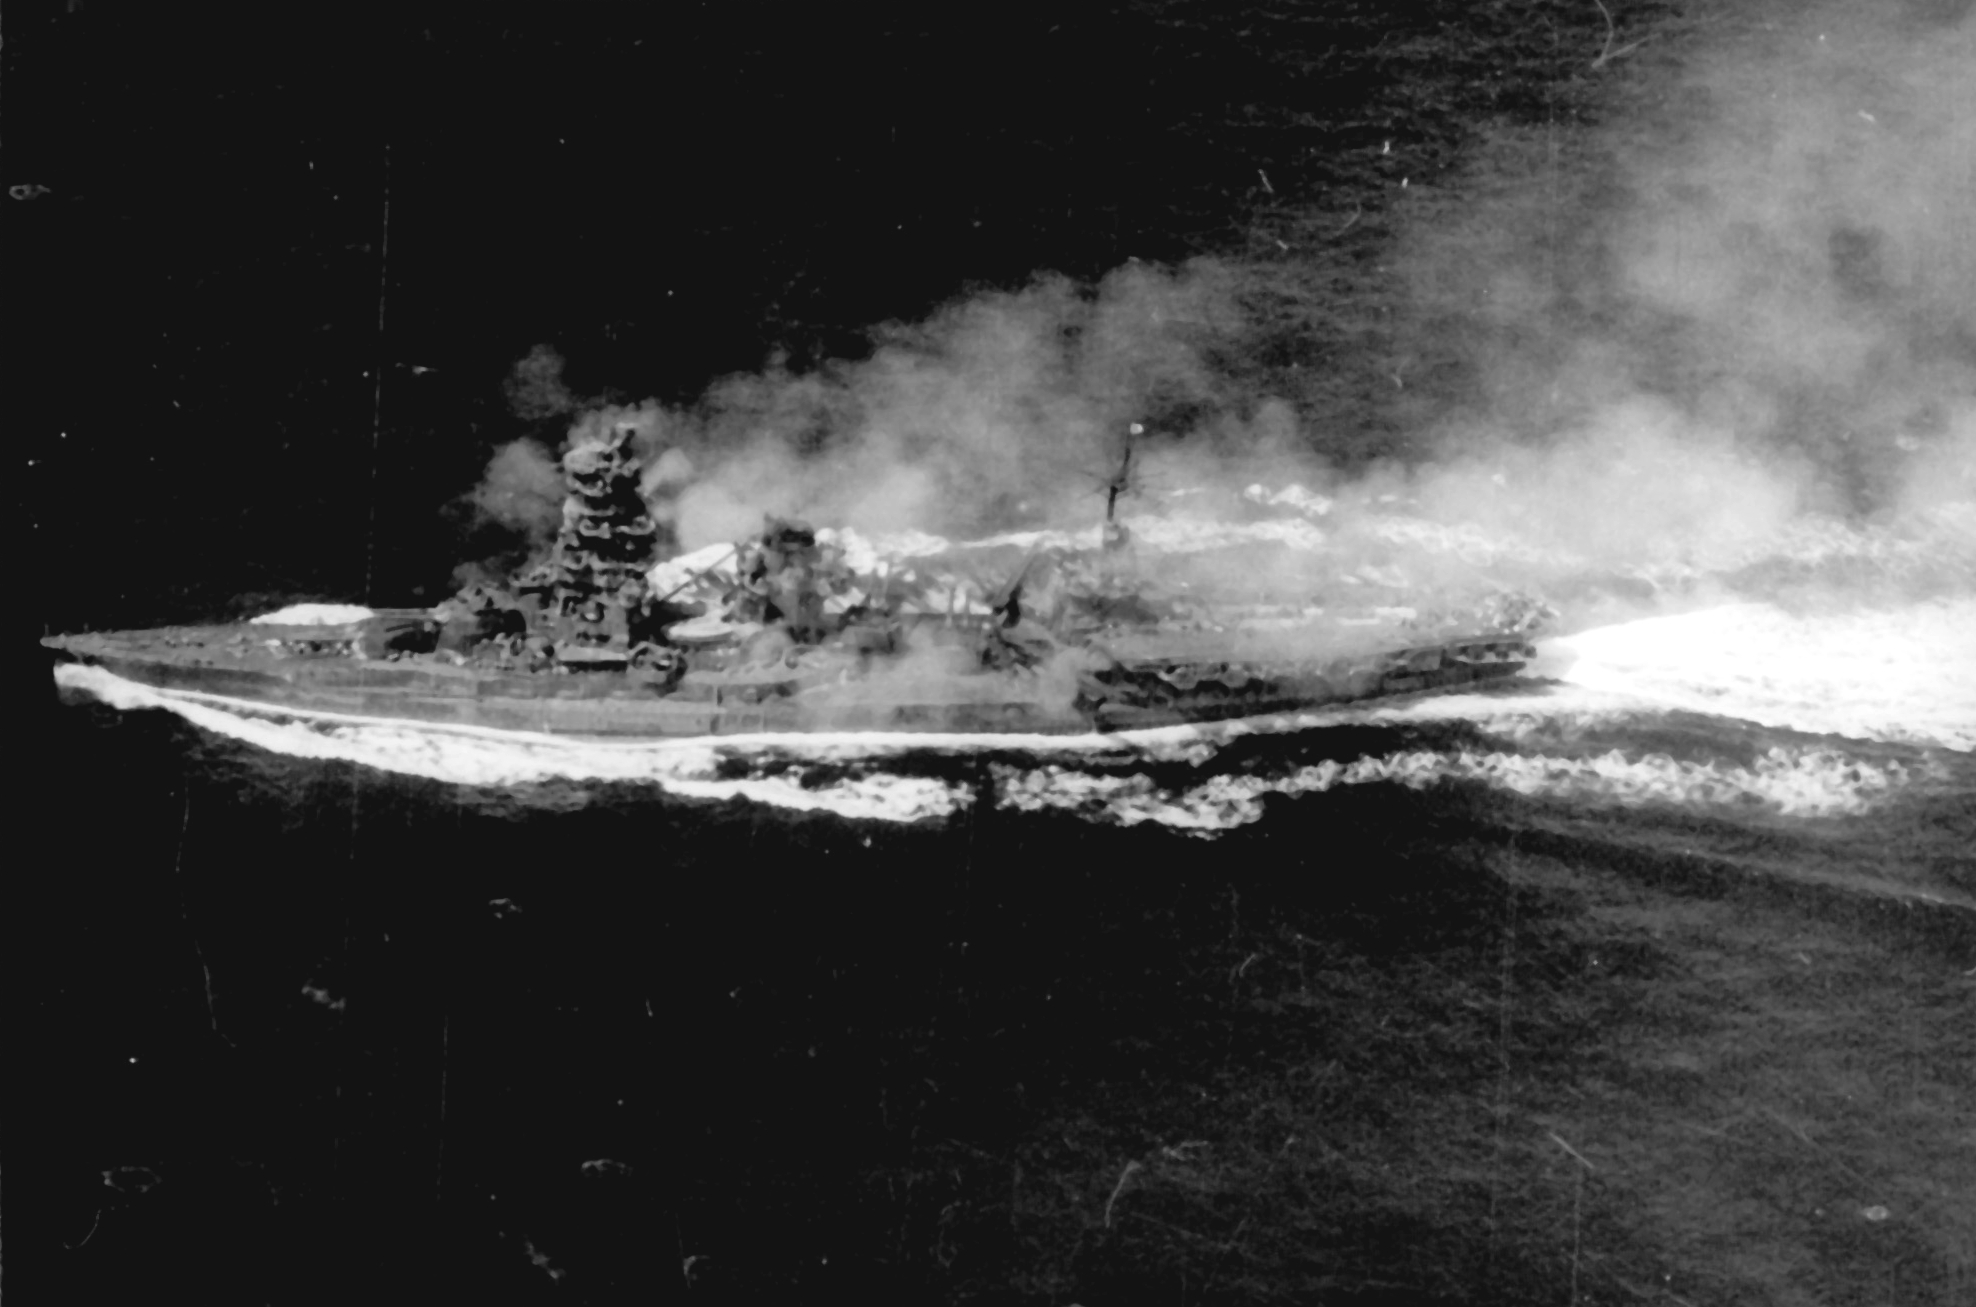 Battleship_Ise_underway_at_Letyte_Gulf_1944.jpeg